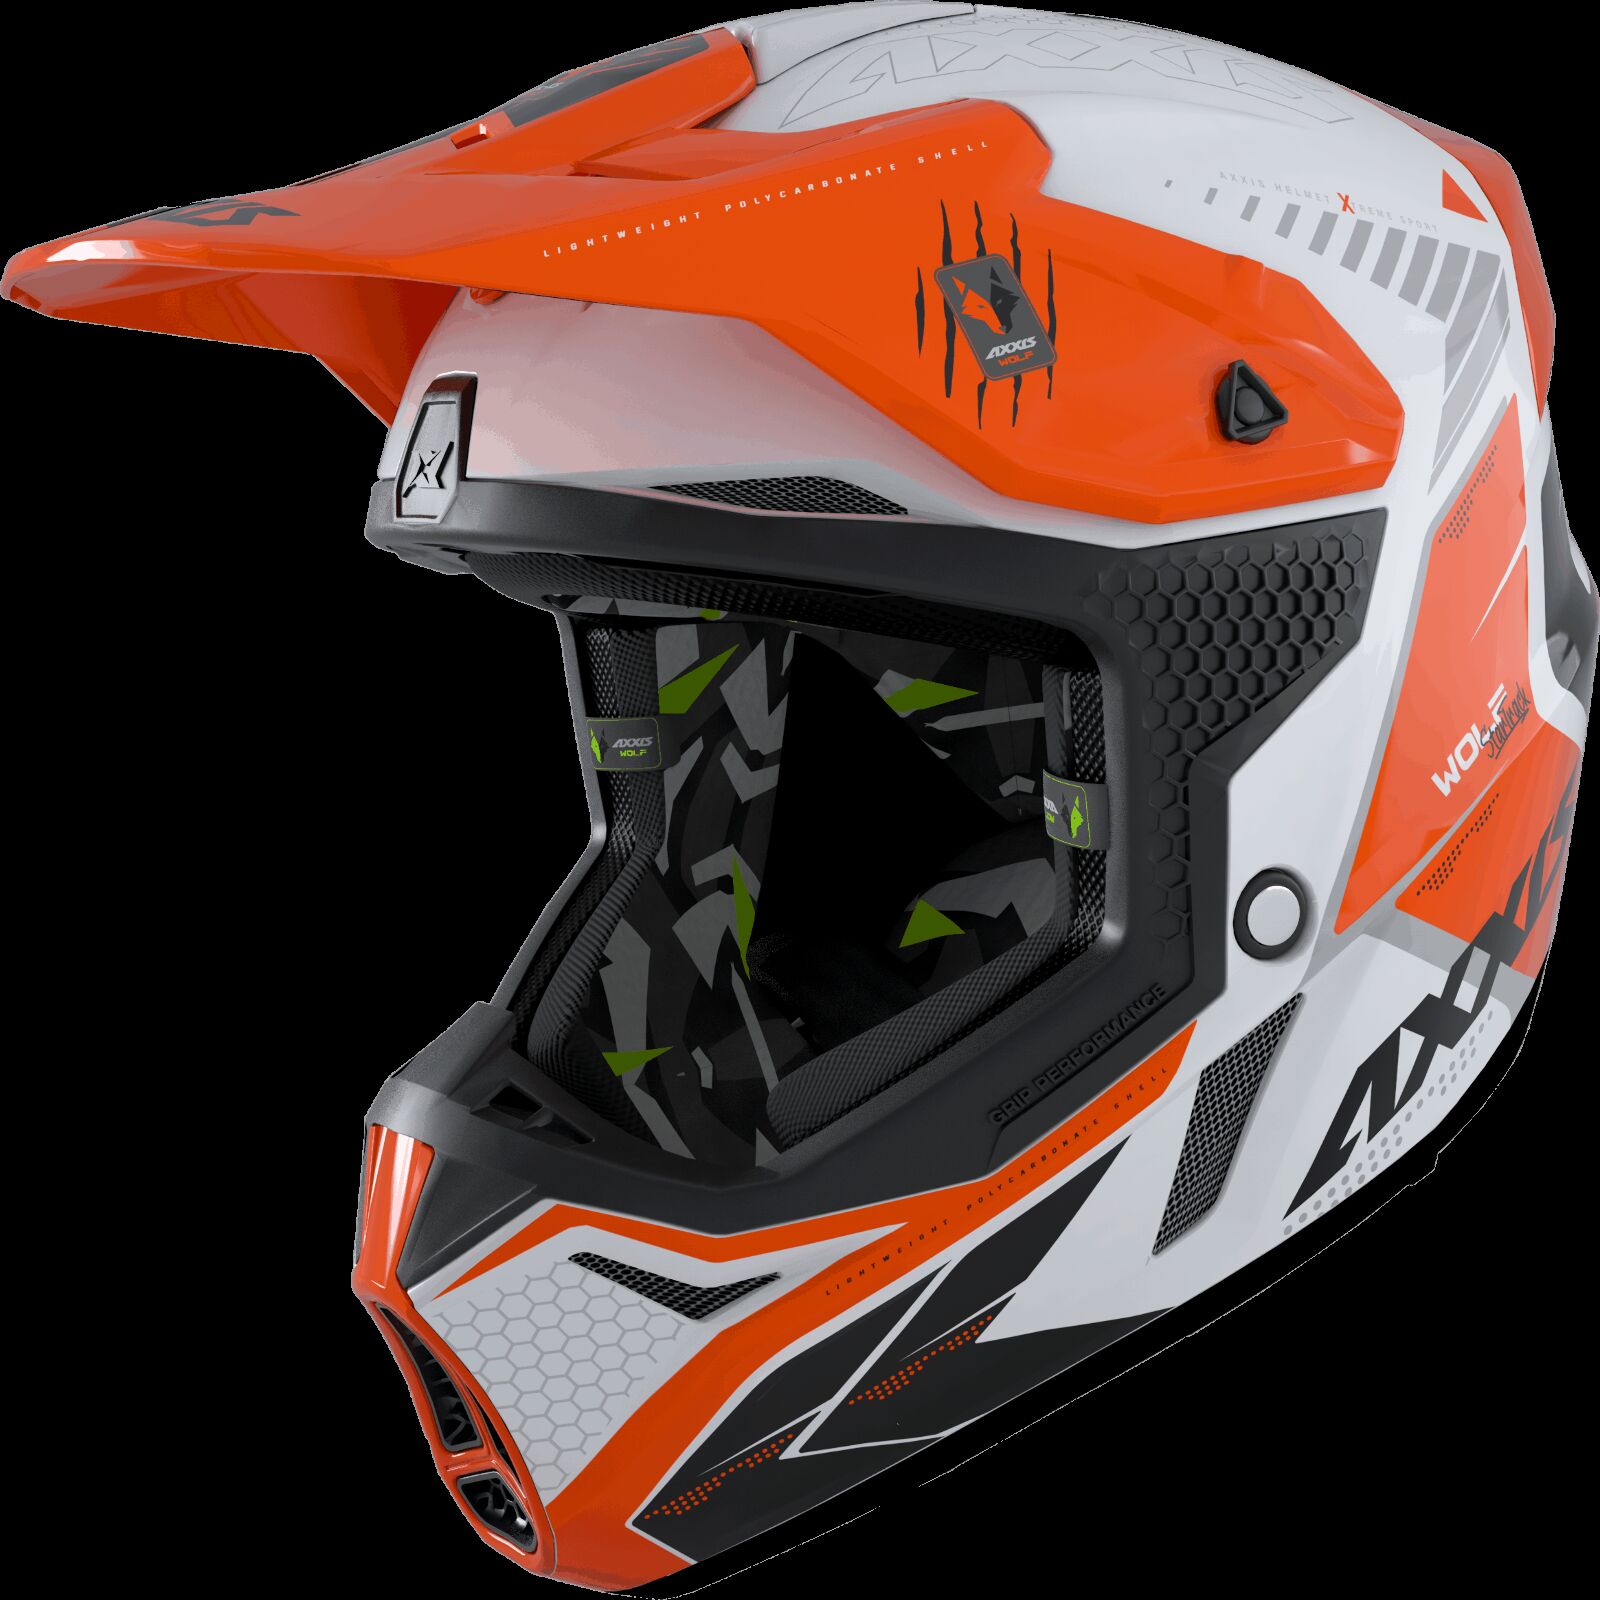 Obrázek produktu Motokrosová helma AXXIS WOLF ABS star track a4 lesklá fluor oranžová XL 42587410407